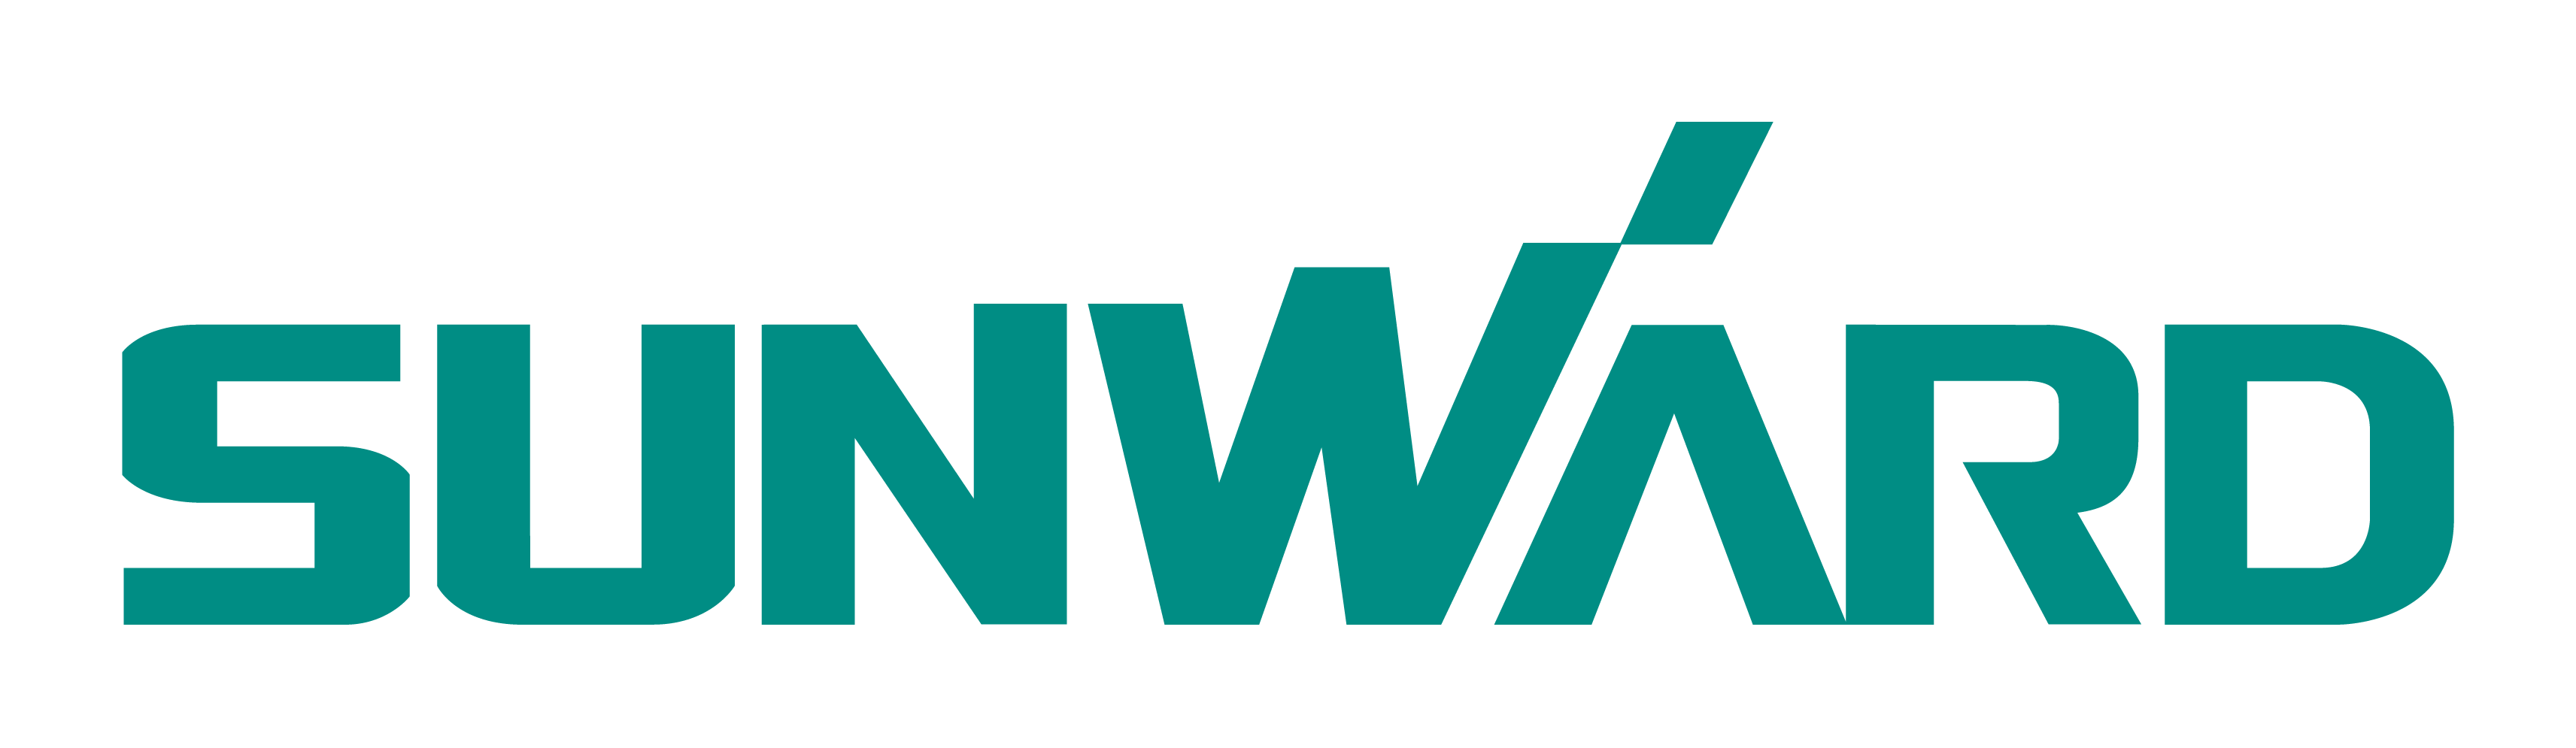 logo Sunward